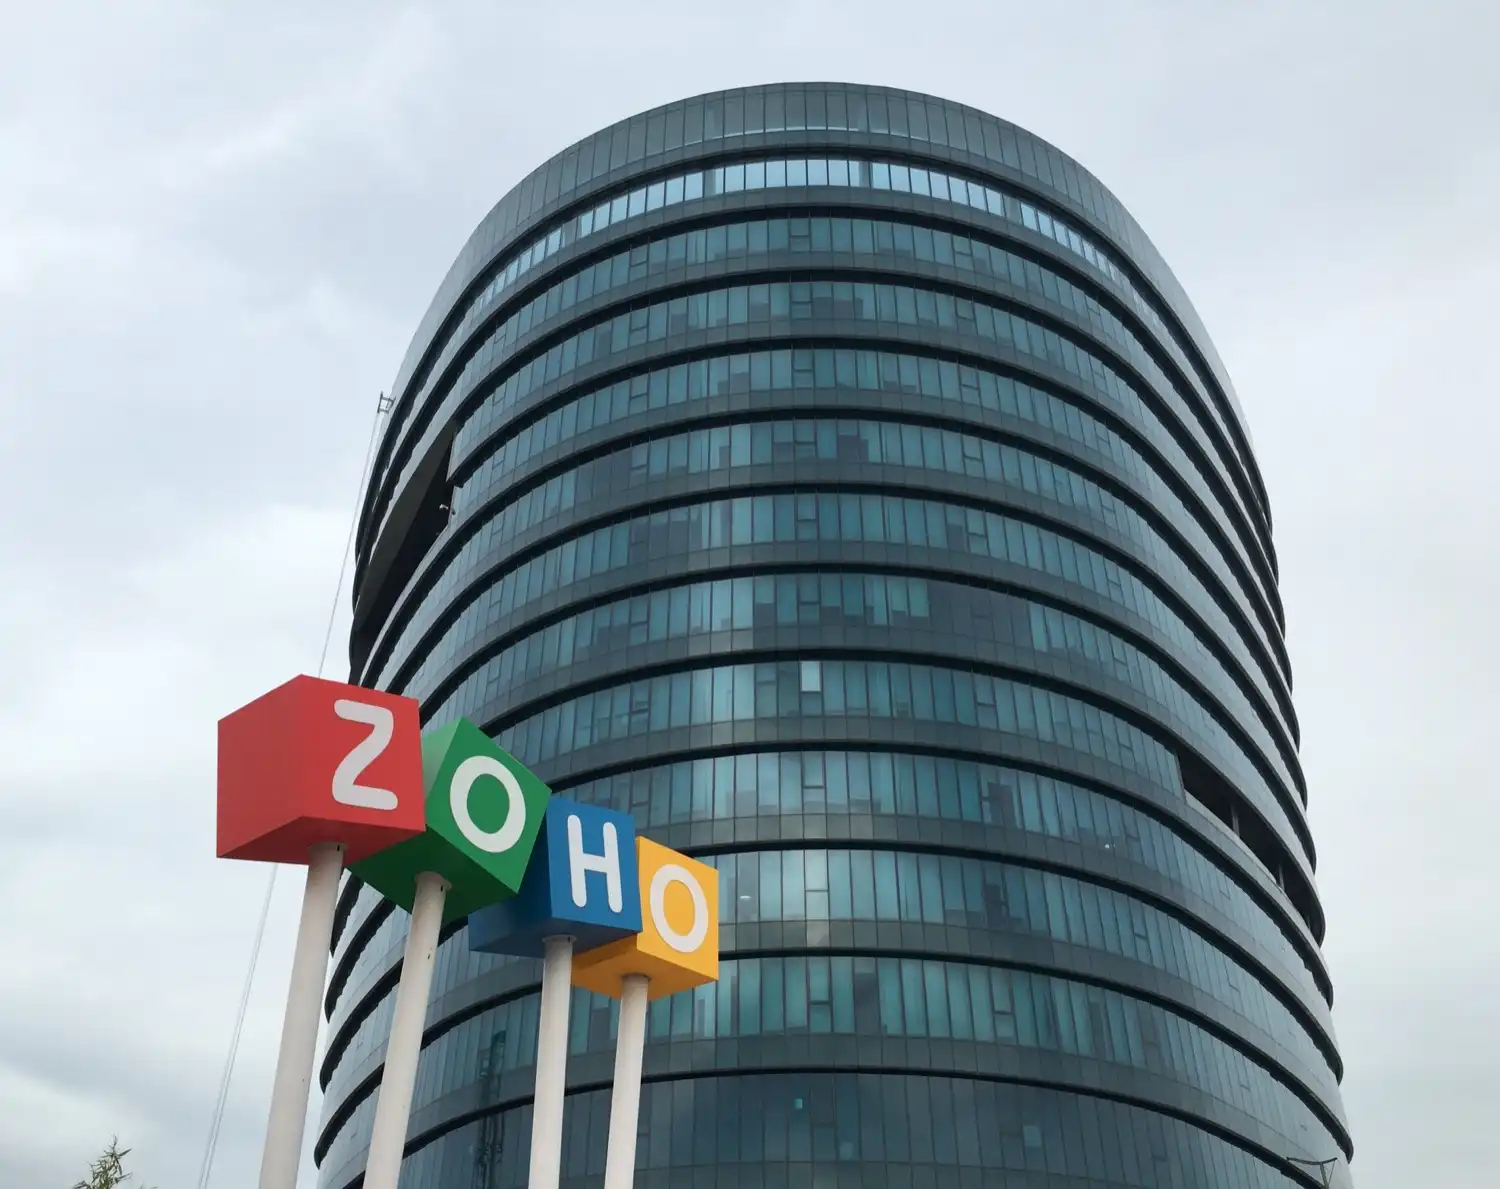 Zoho One tuvo un crecimiento récord en todo el mundo